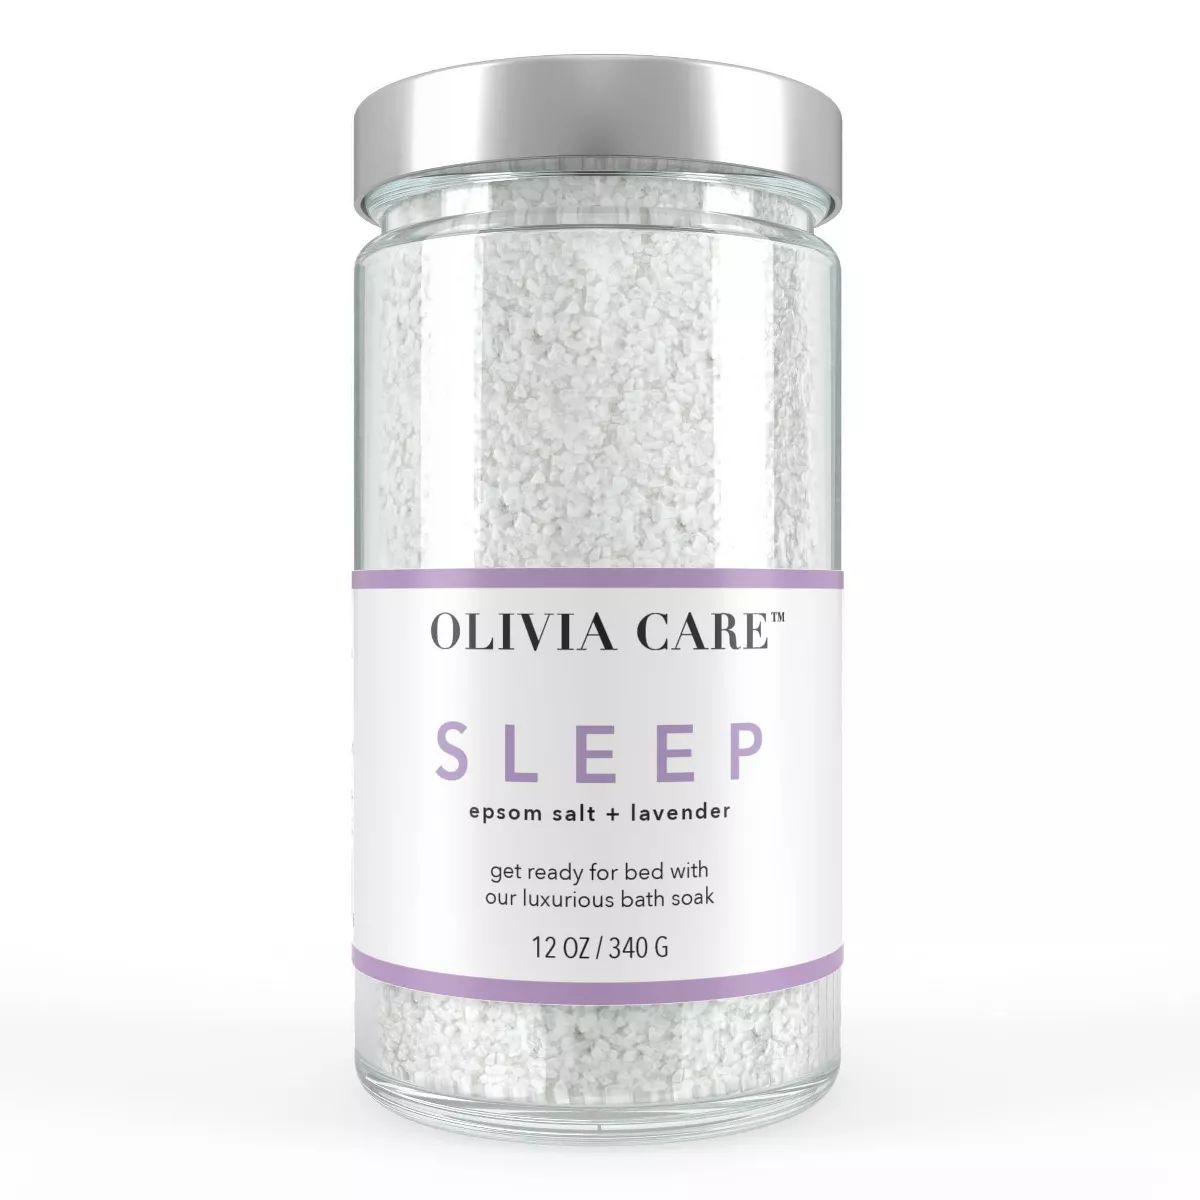 Olivia Care Lavender Bath Salts - Sleep - 12oz | Target